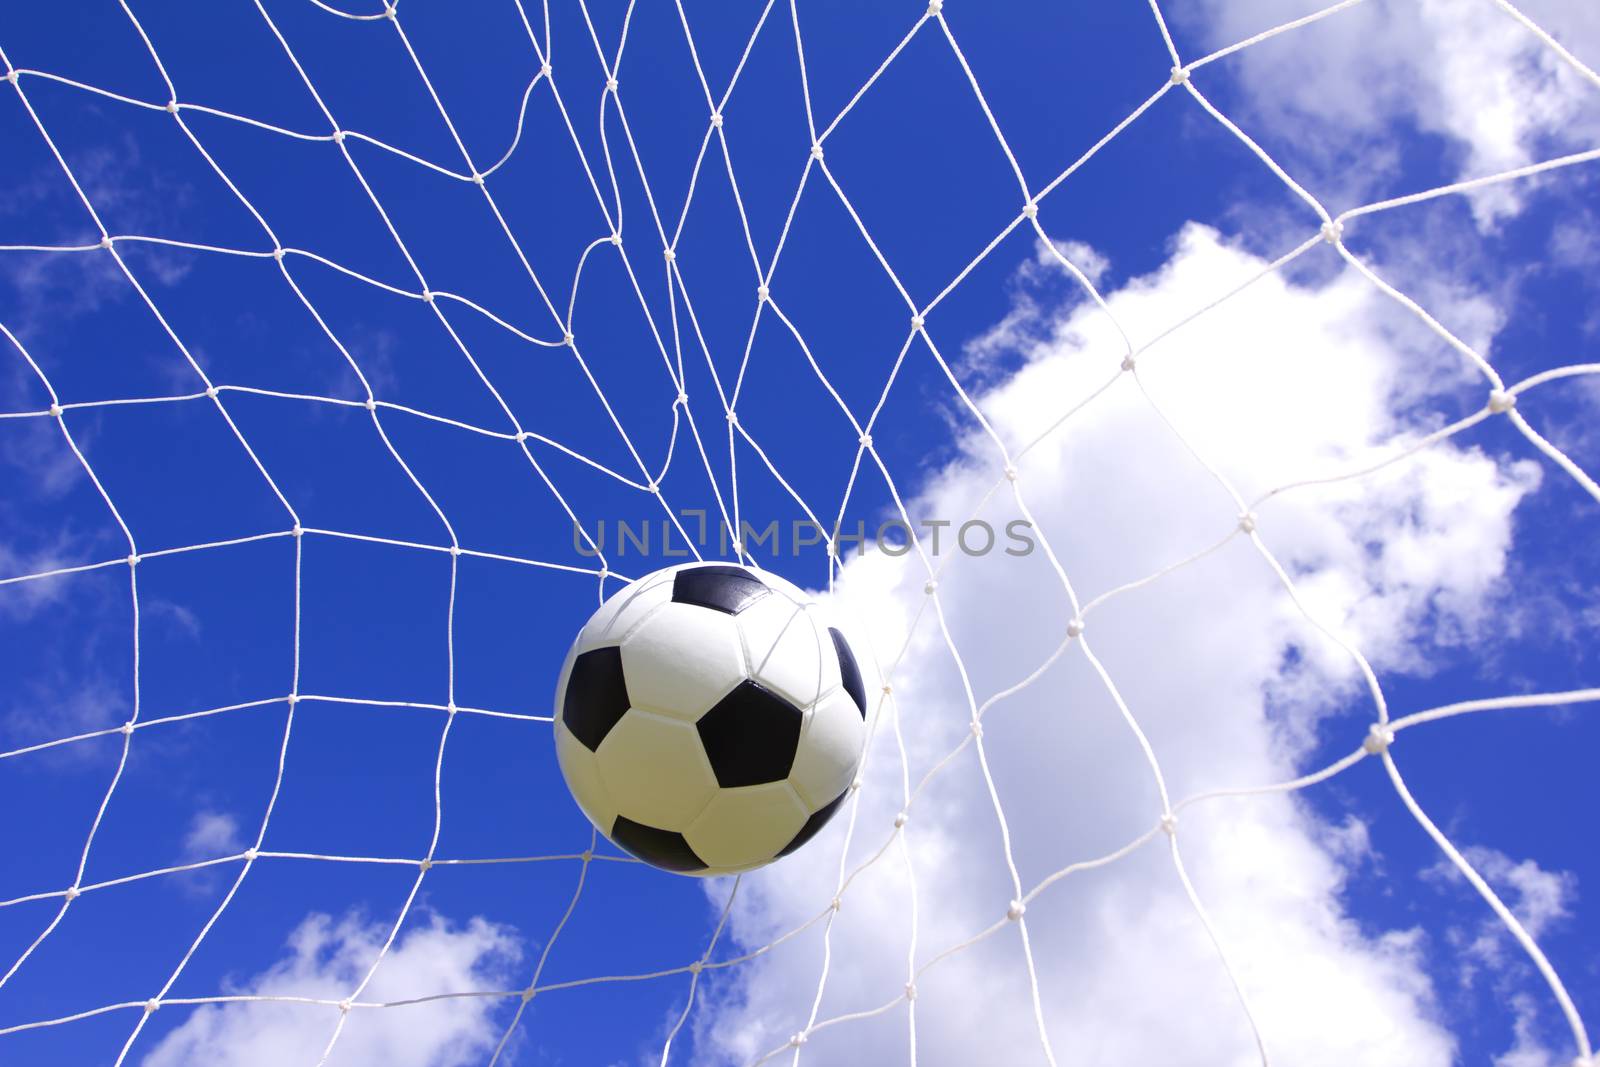 Soccer football in Goal net by wyoosumran